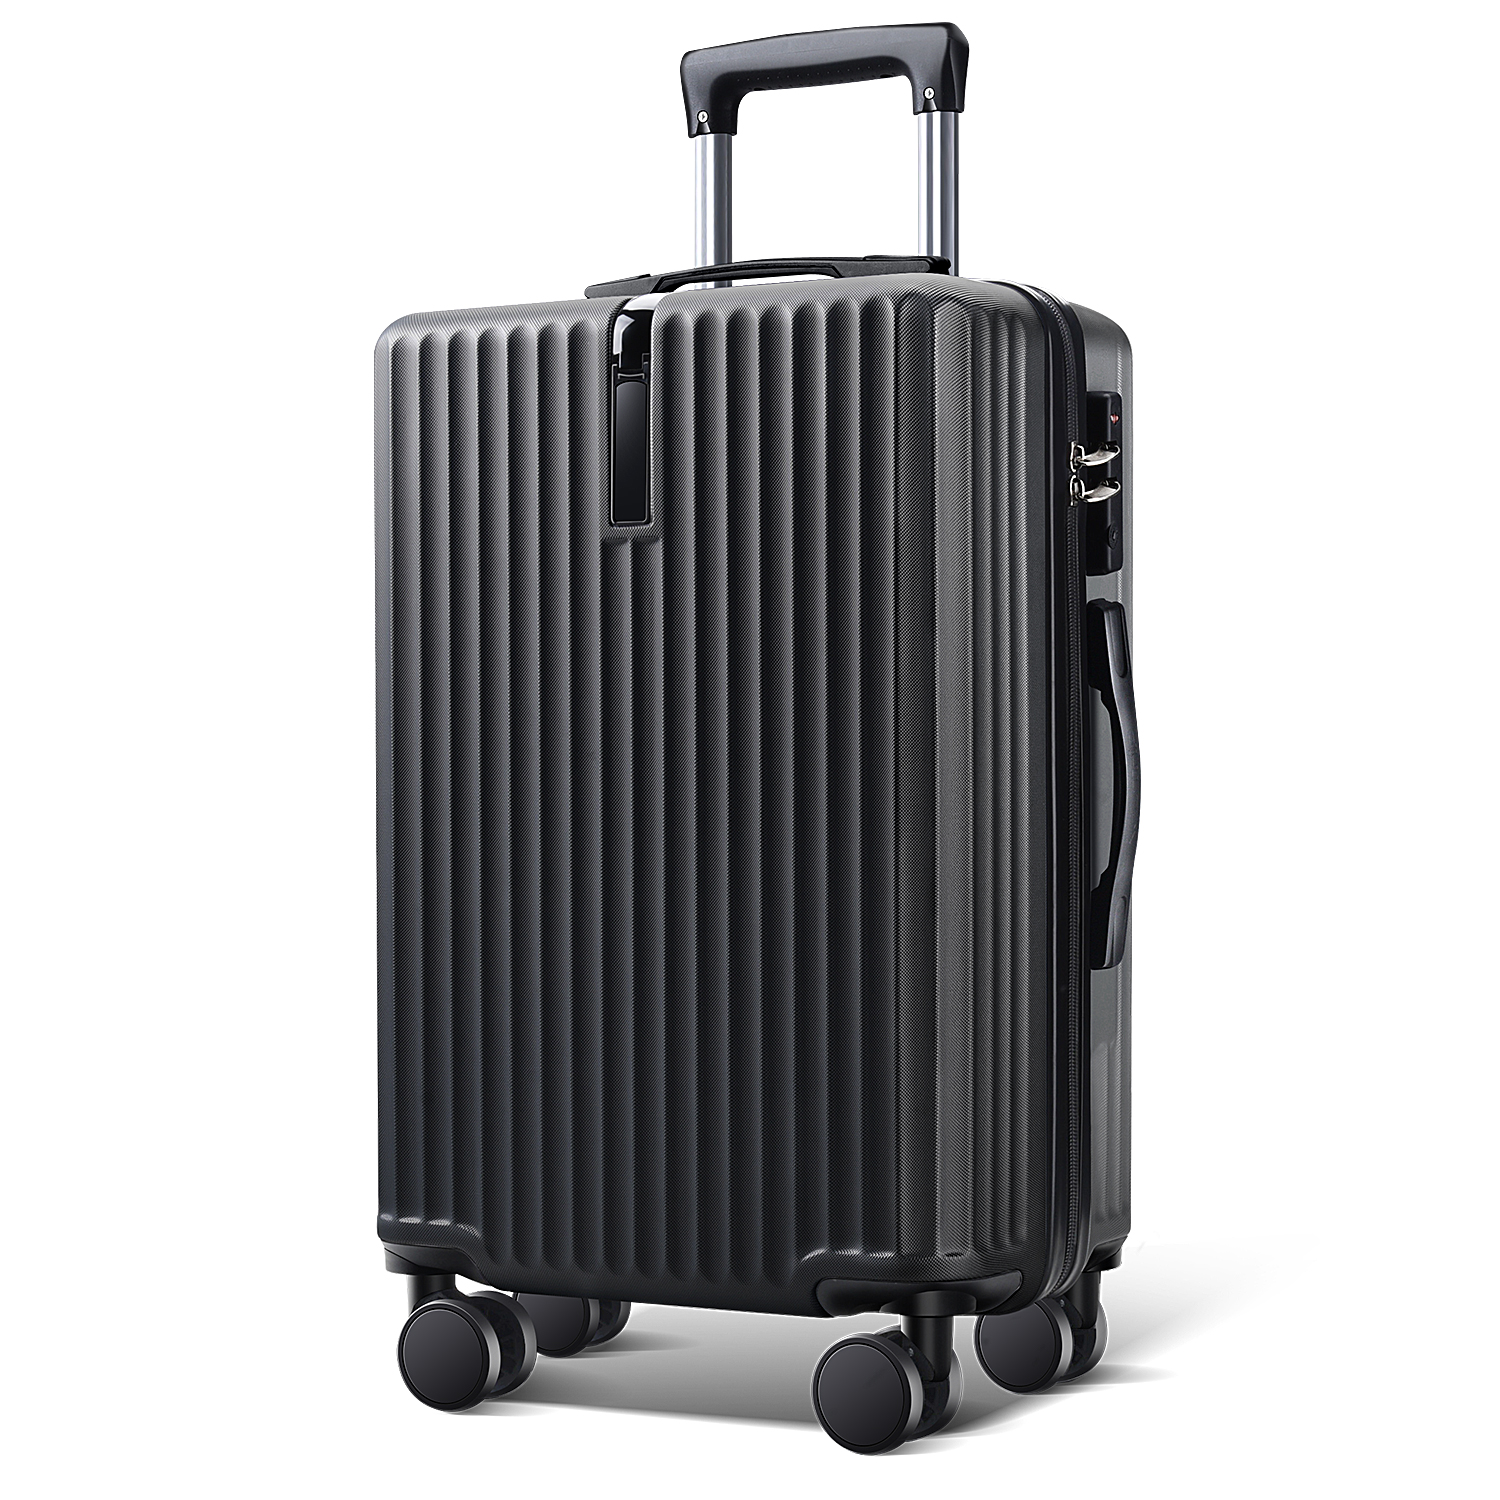 スーツケース 24インチ スーツケース キャリーケース キャリーバッグ 3カラー選ぶ S M Lサイズ 3-5日用 泊まる 軽量設計 大容量 海外旅行  GOTOトラベル 旅行